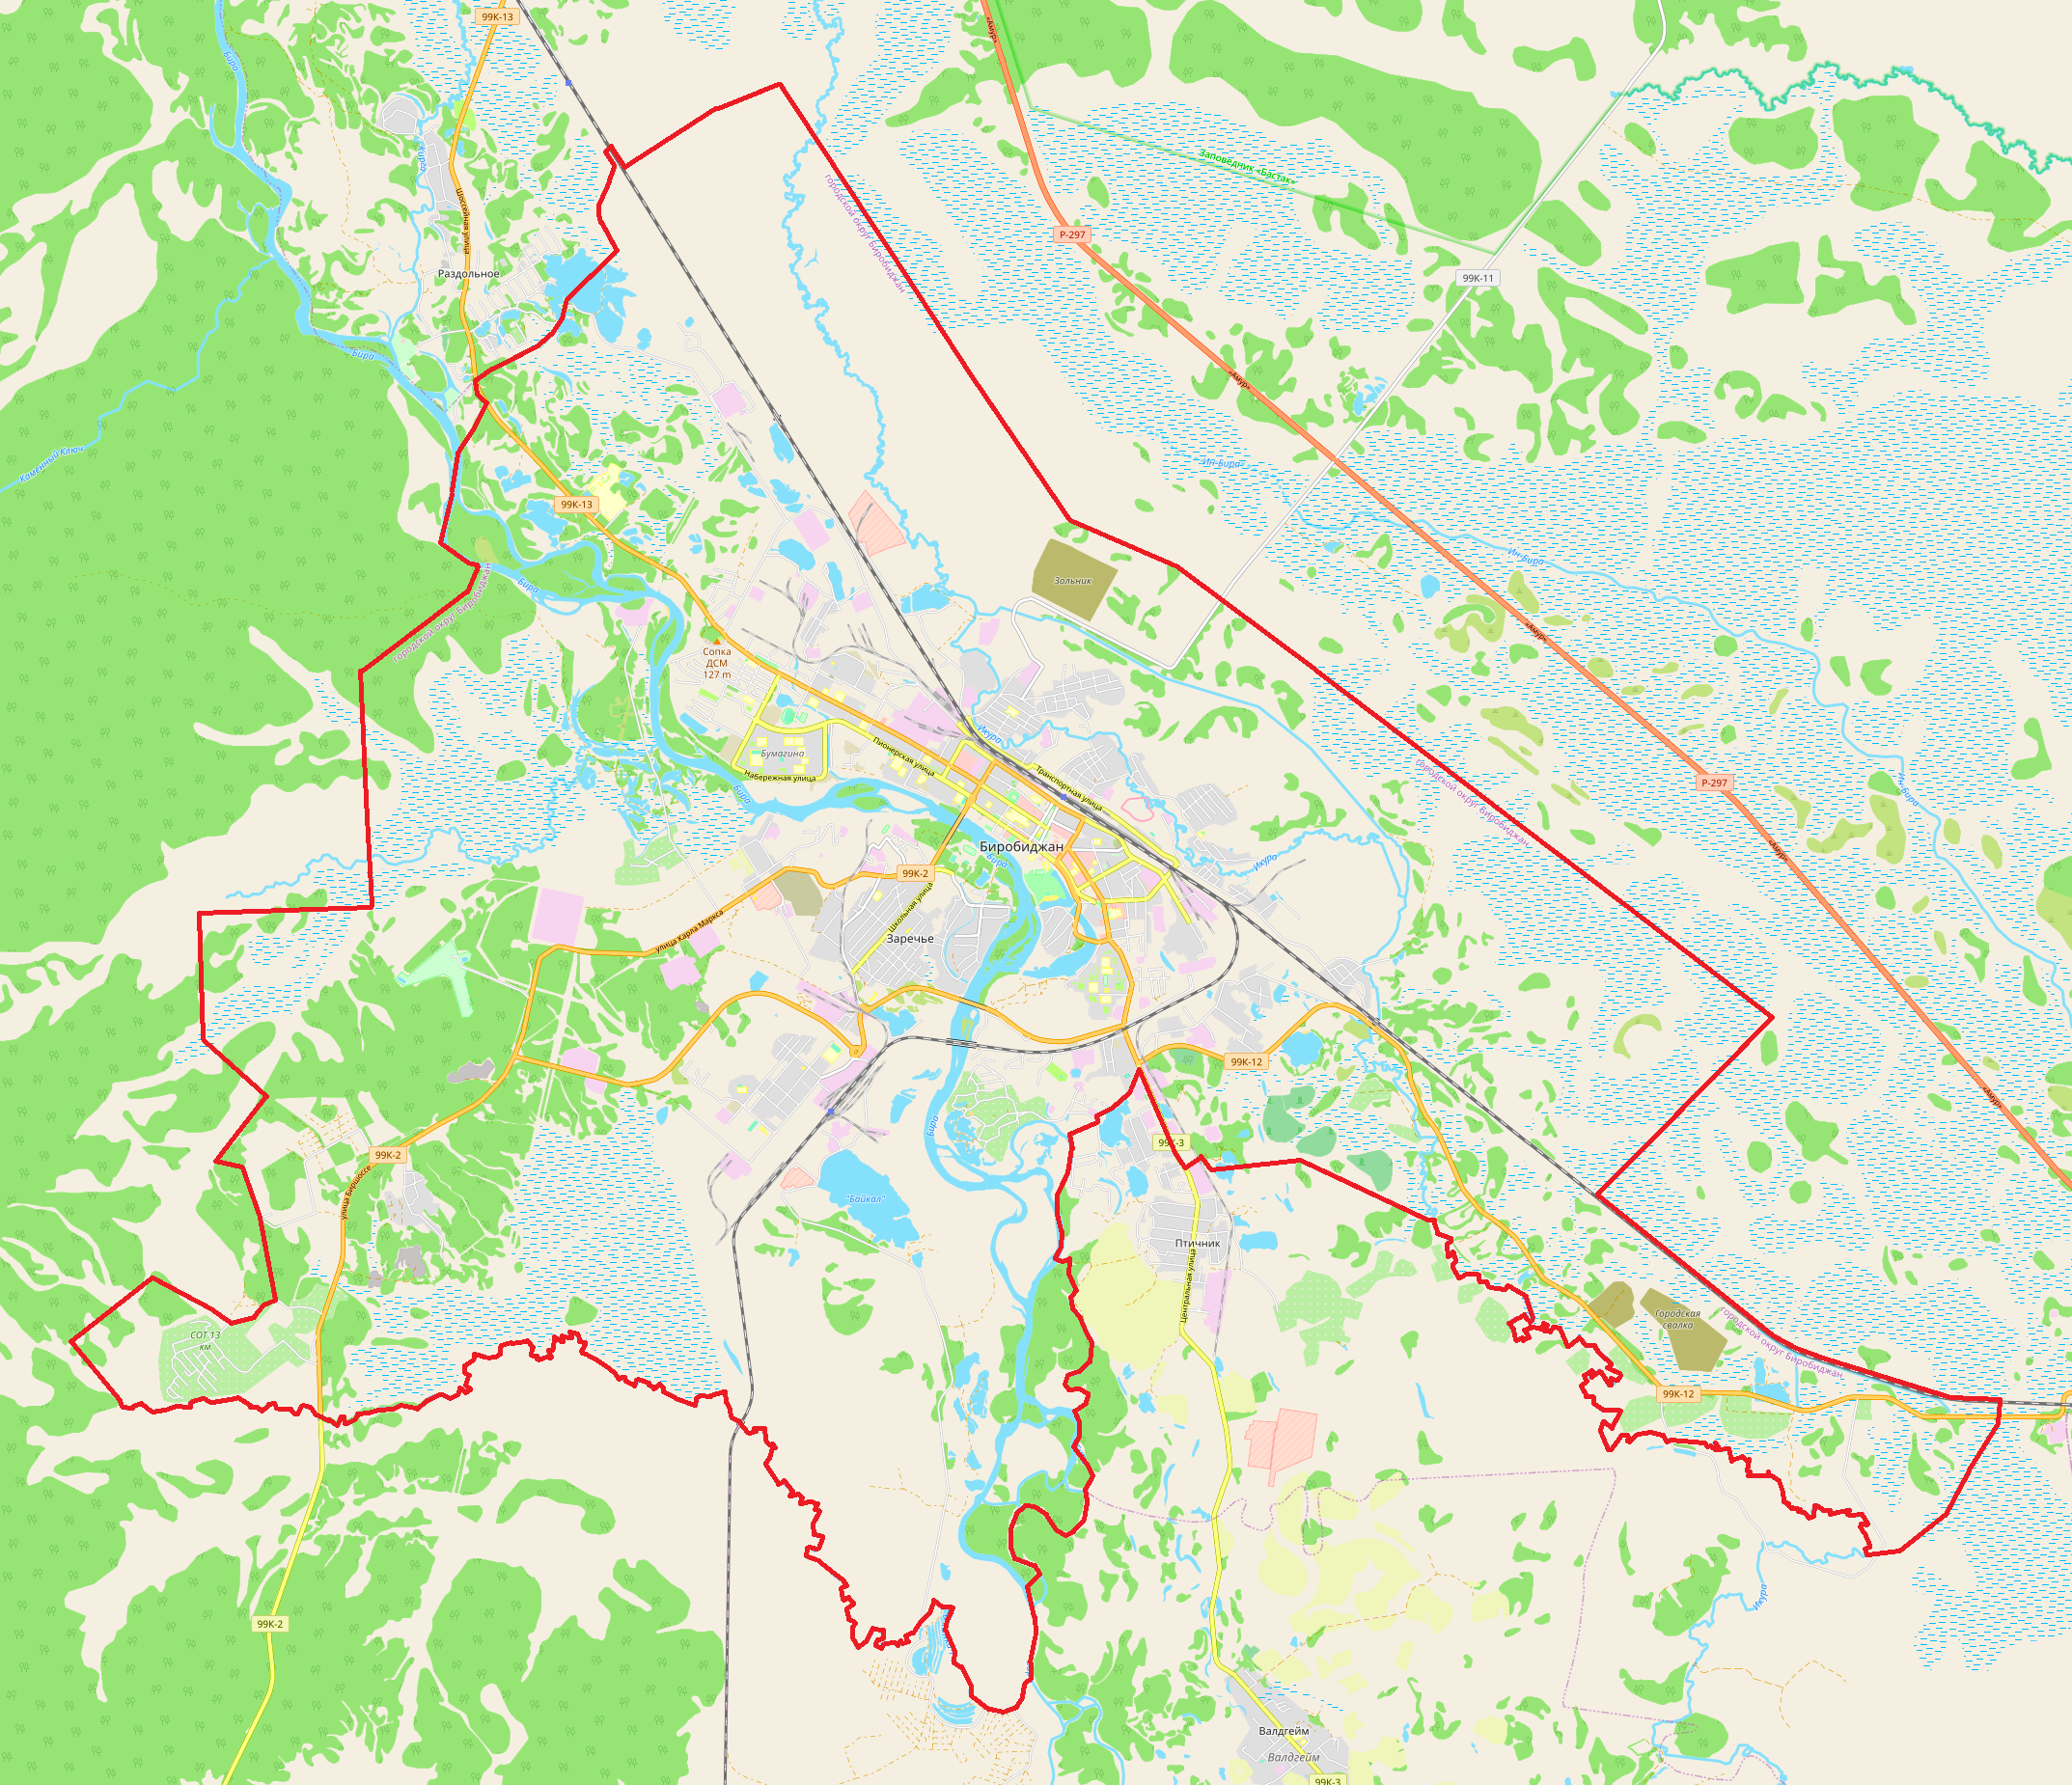 File:Birobidzhan location  - Wikimedia Commons